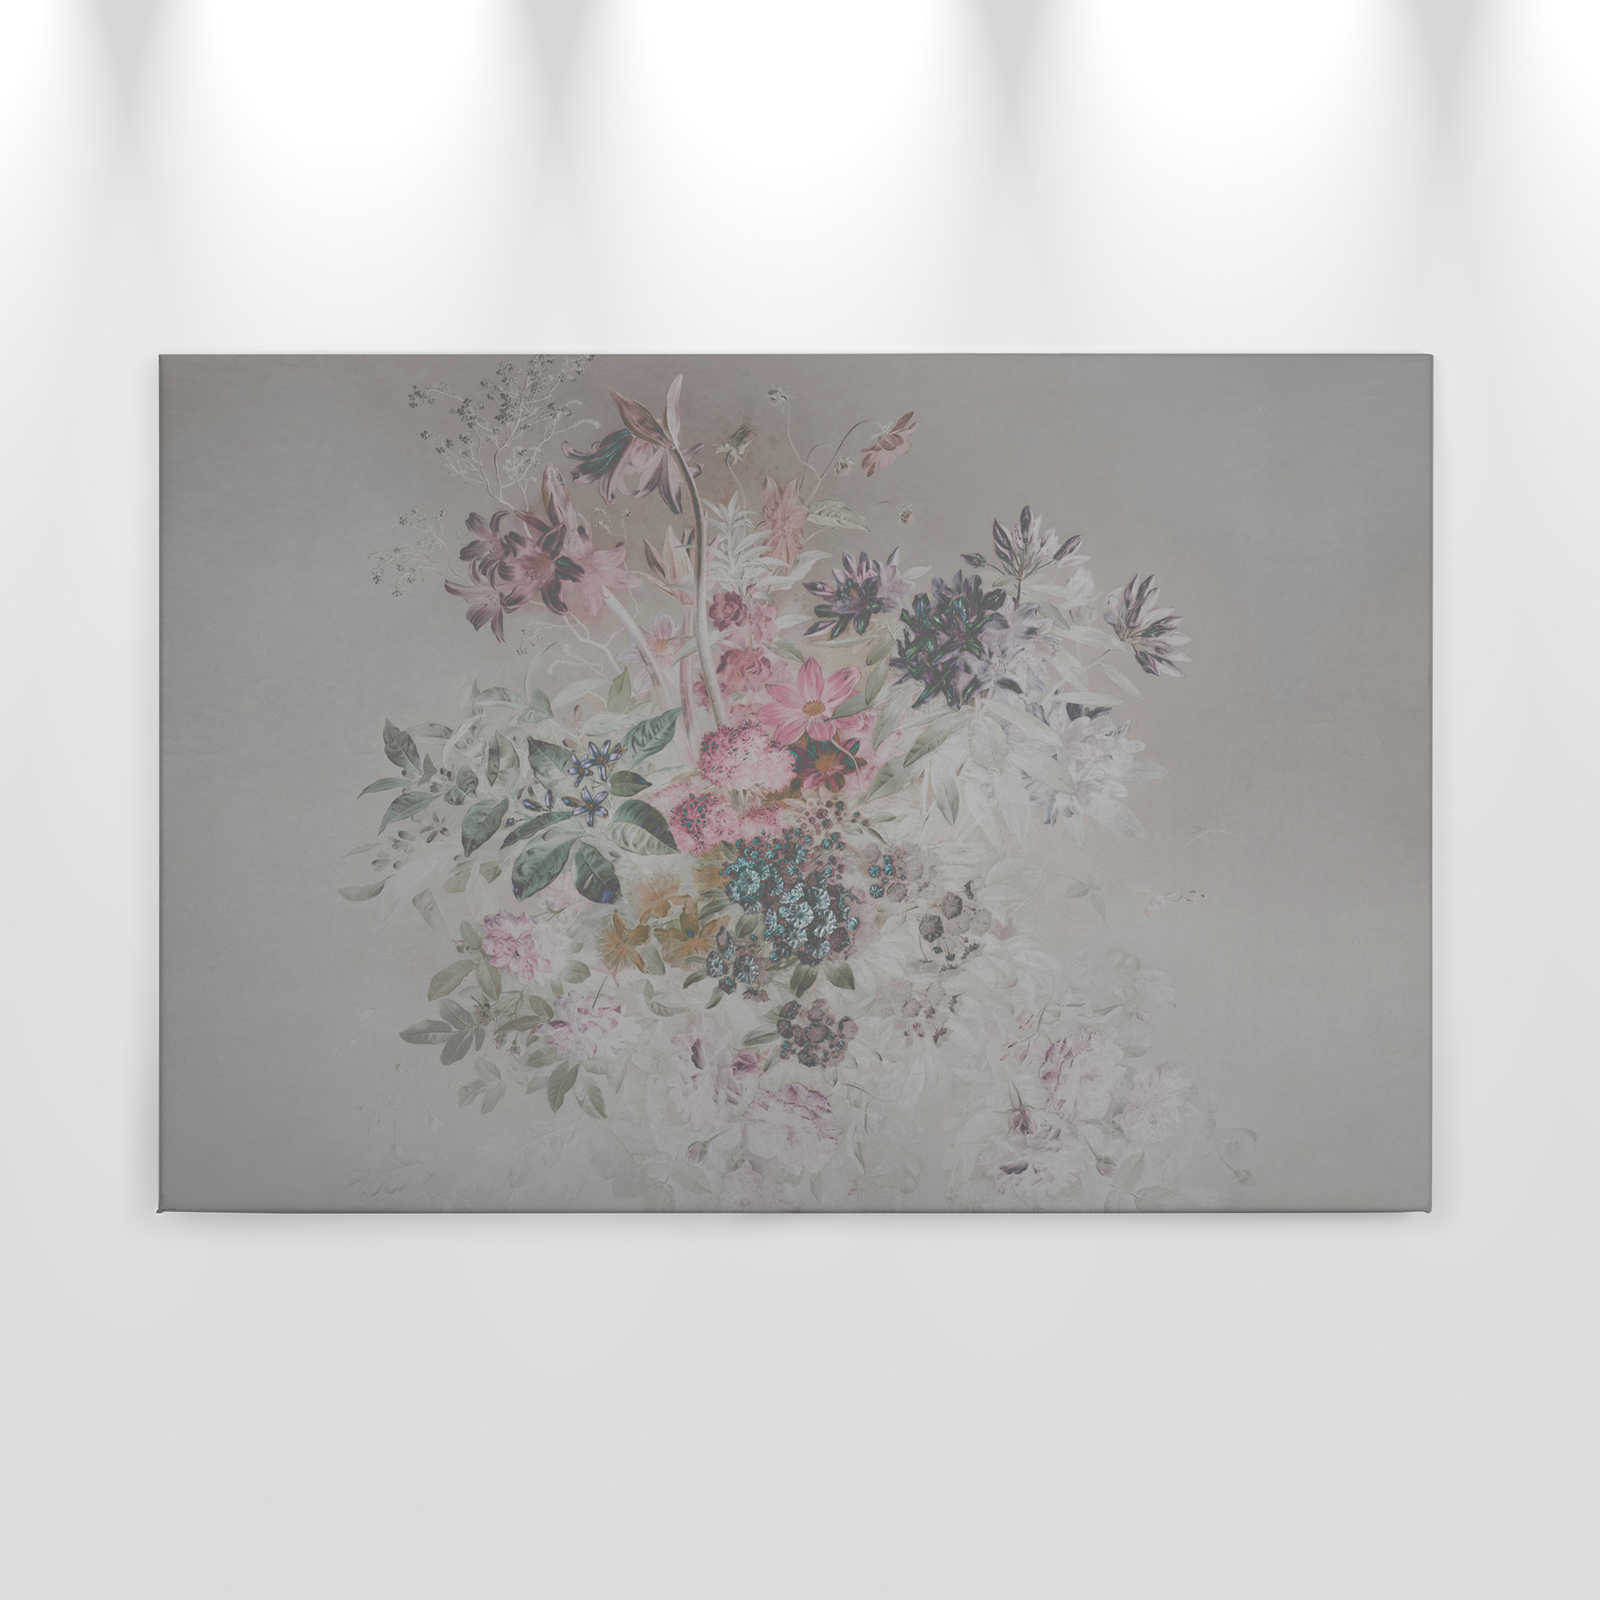             Cuadro lienzo flores con diseño pastel | rosa, gris - 0,90 m x 0,60 m
        